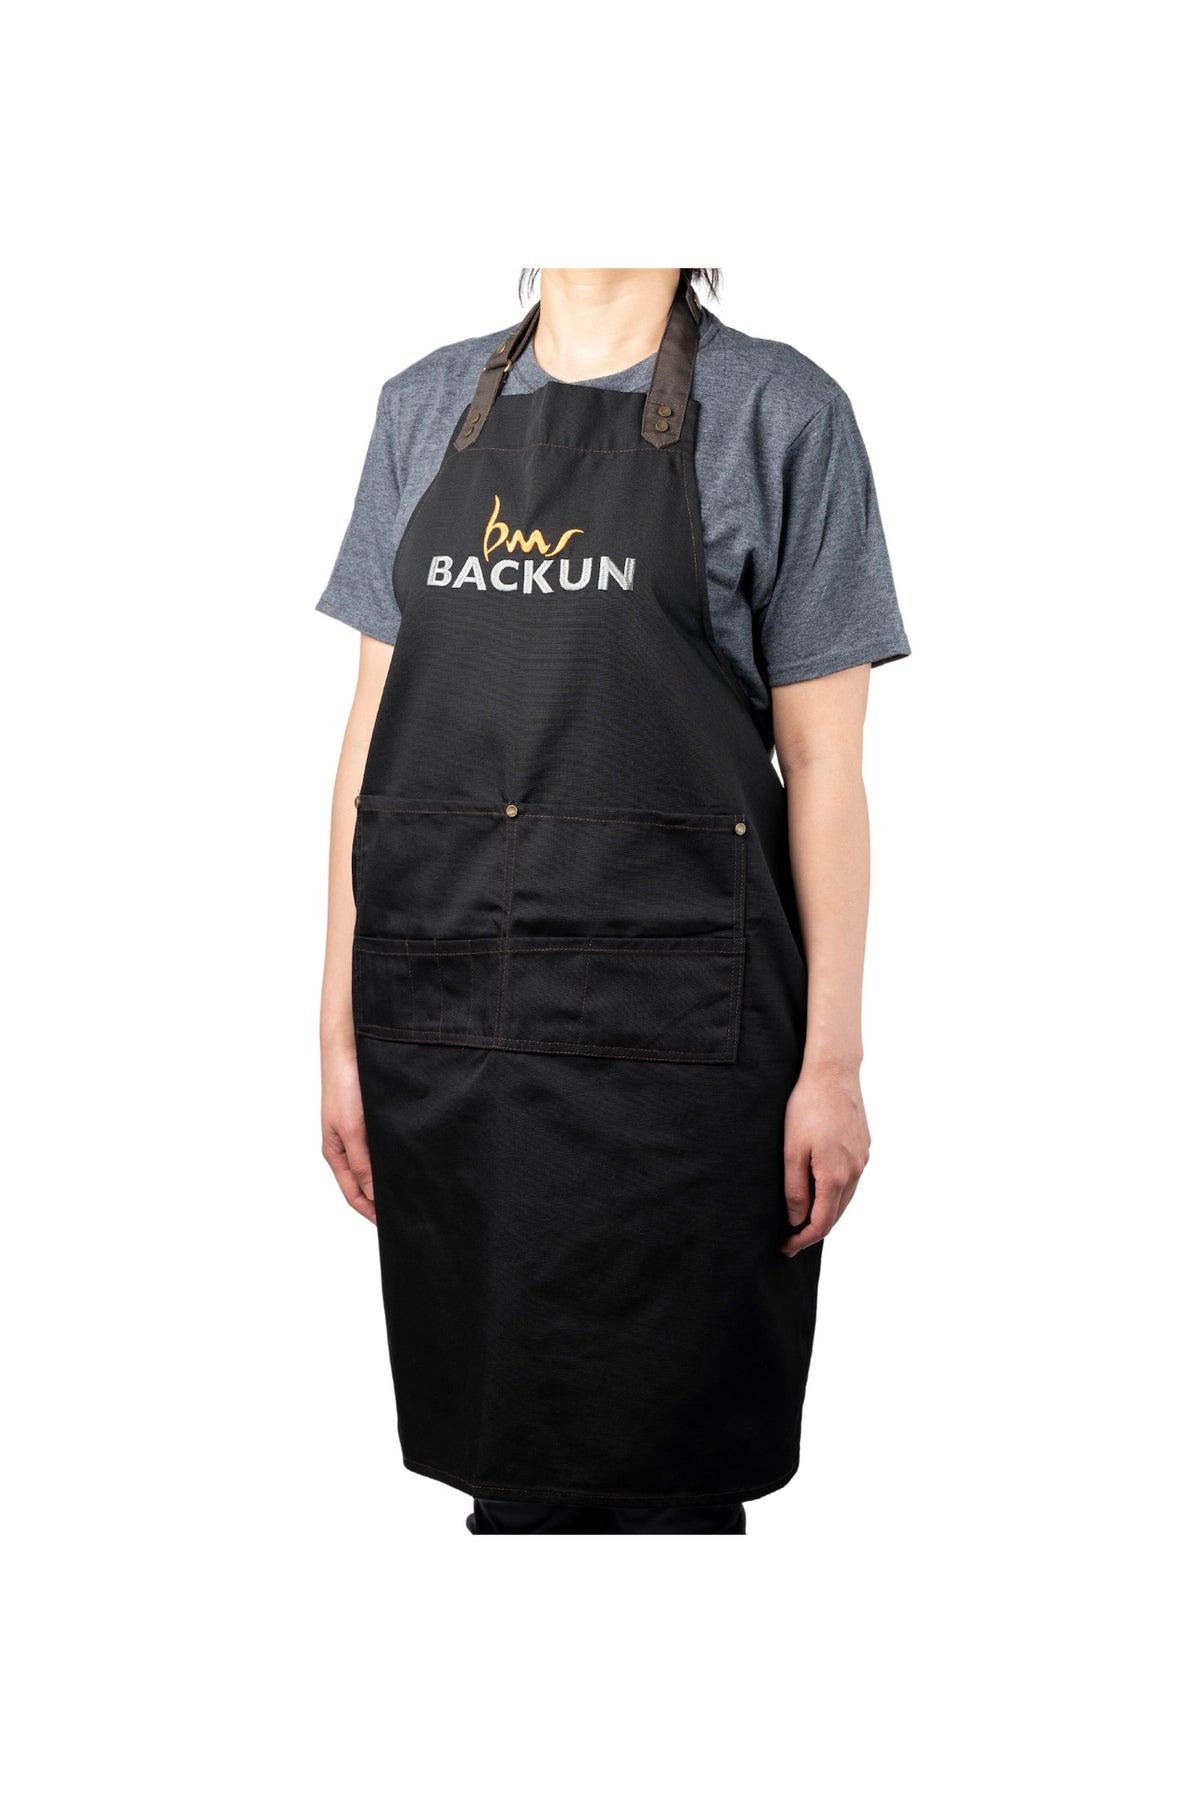 backun-apron-2